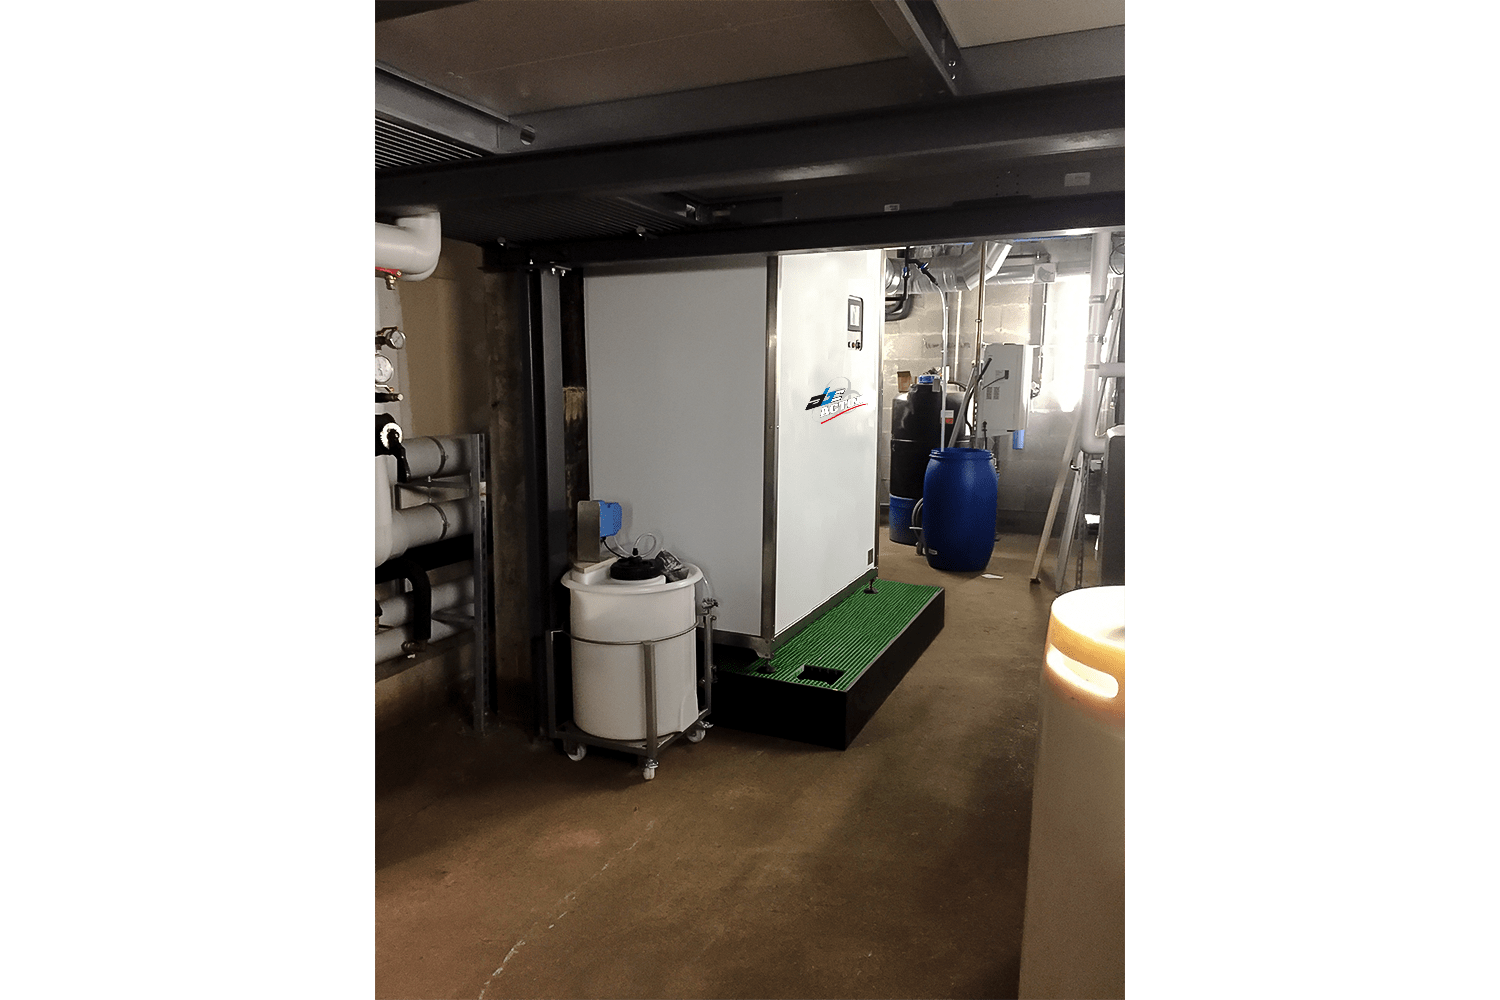 Microsteam biowaste decontamination system